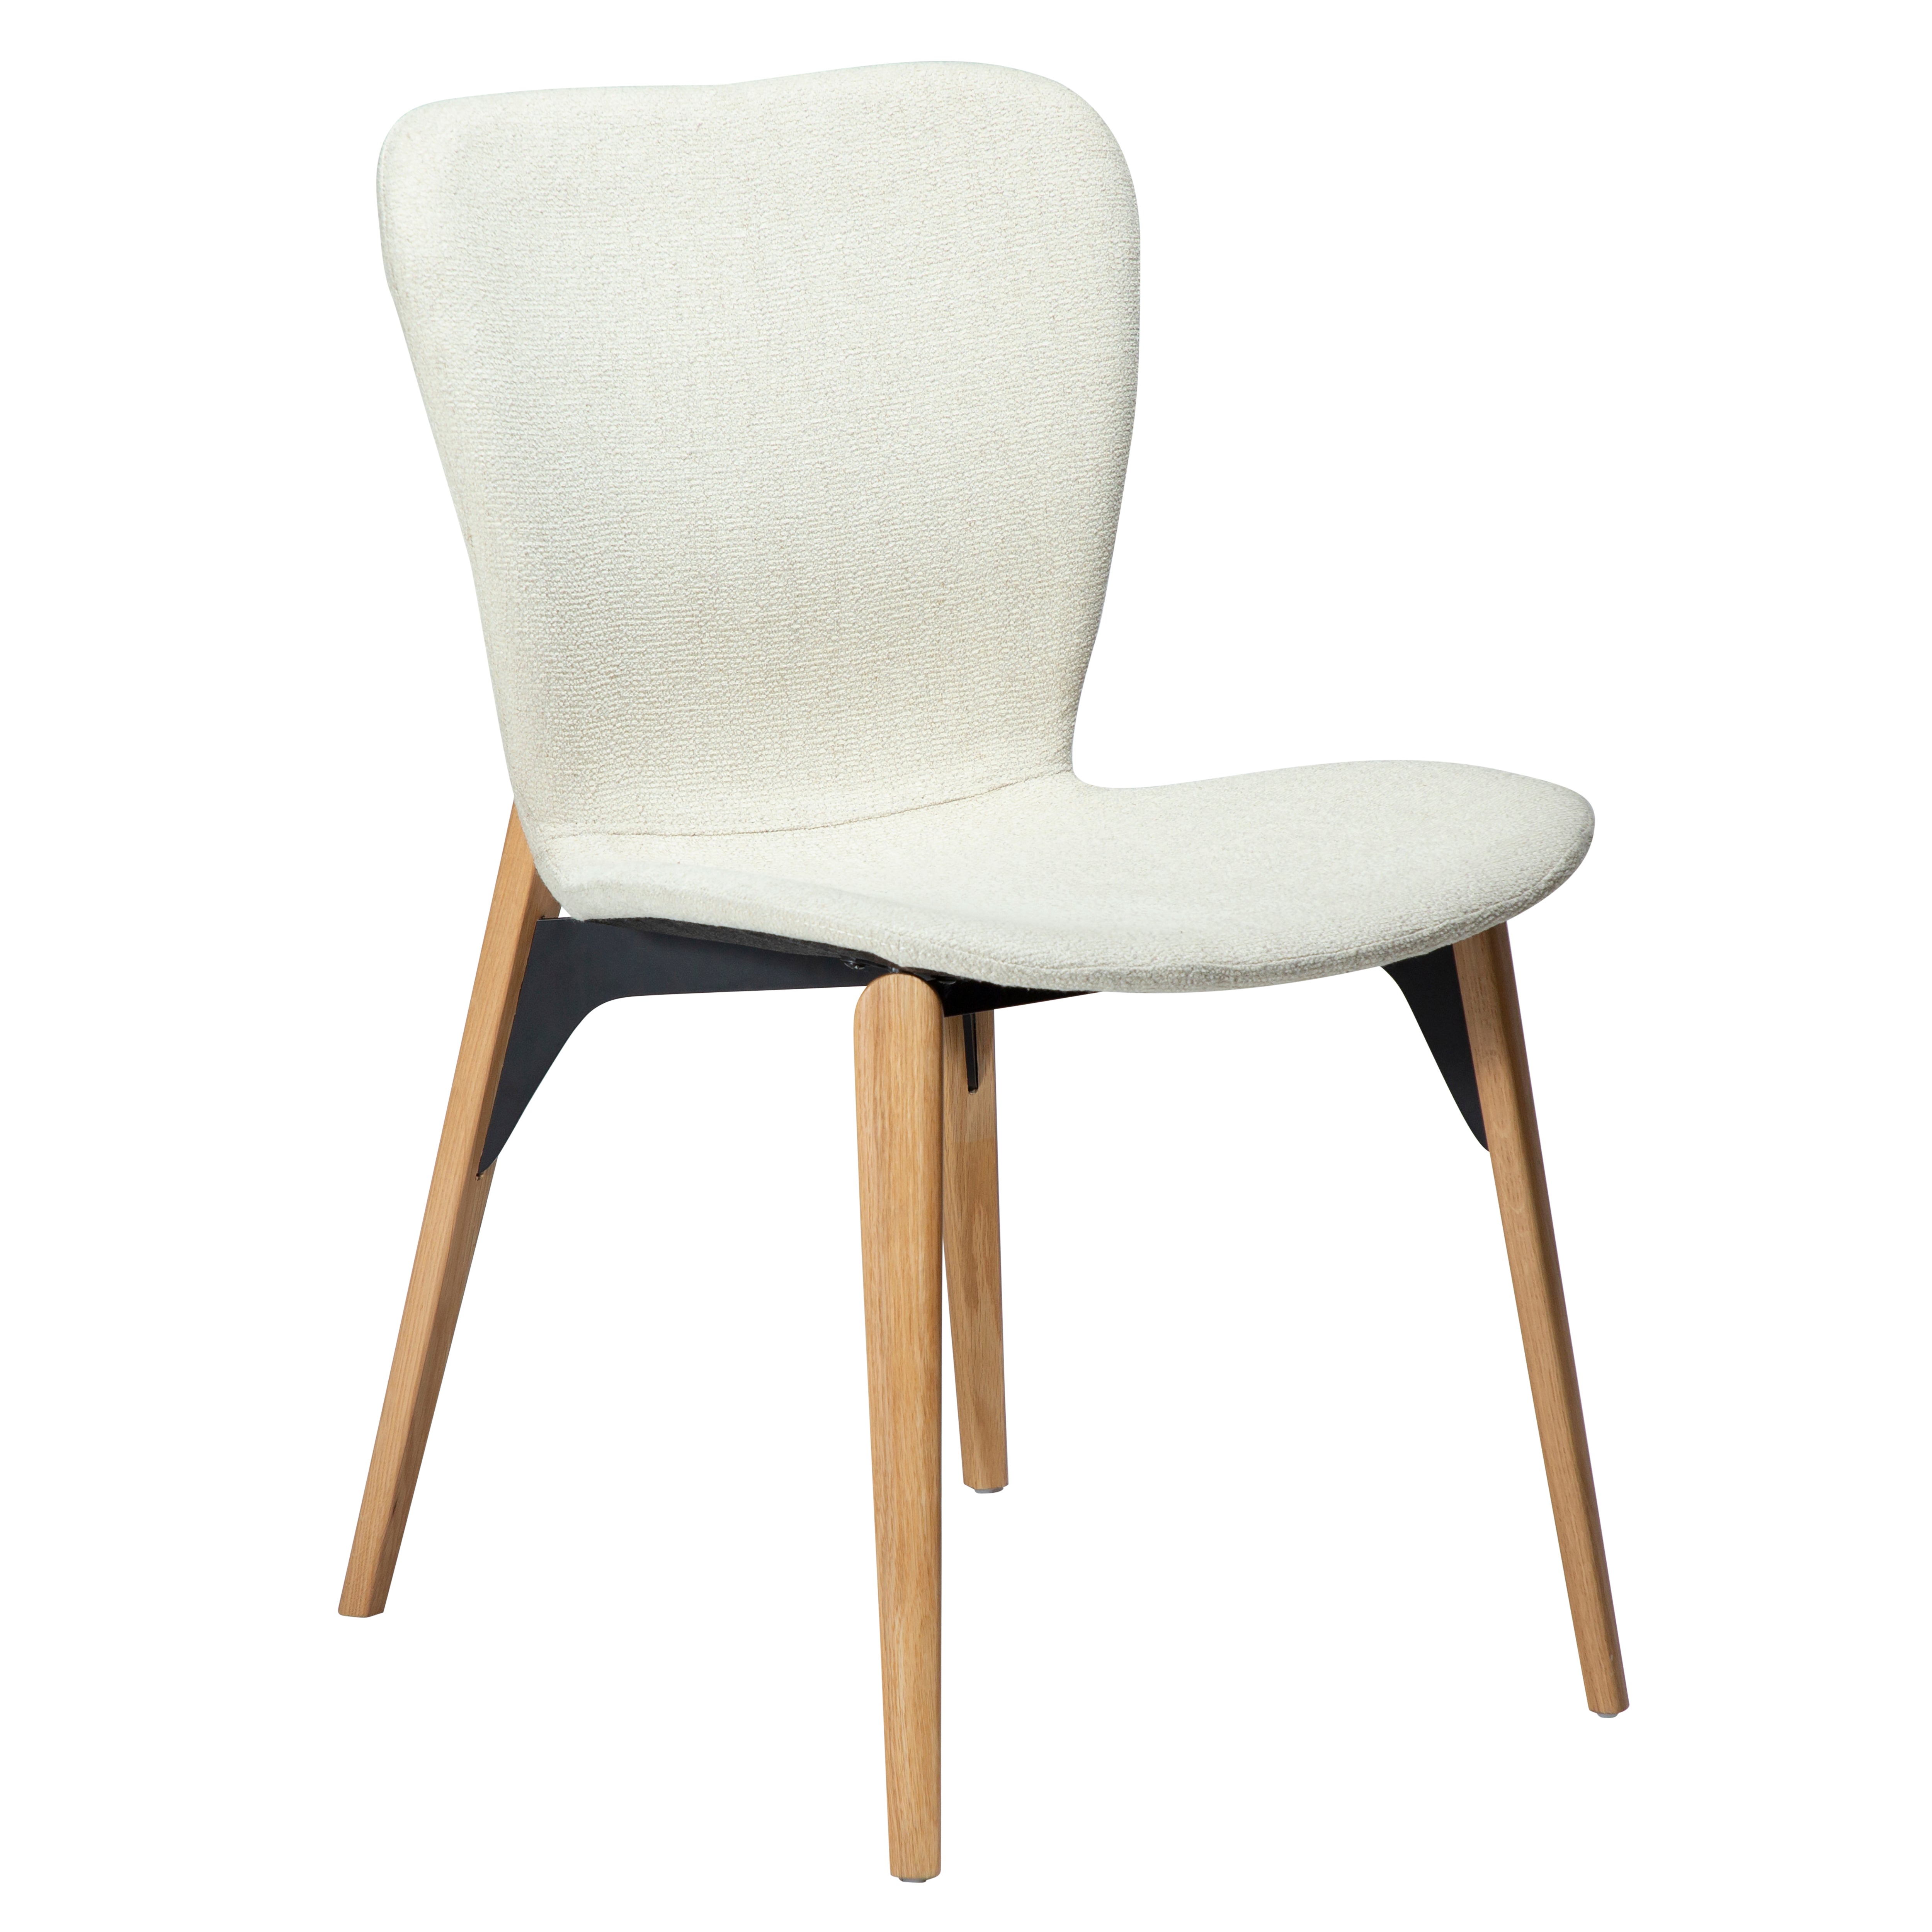 Paragon dining chair, sumptuous Bone white bouclé fabric and sculpted oak legs